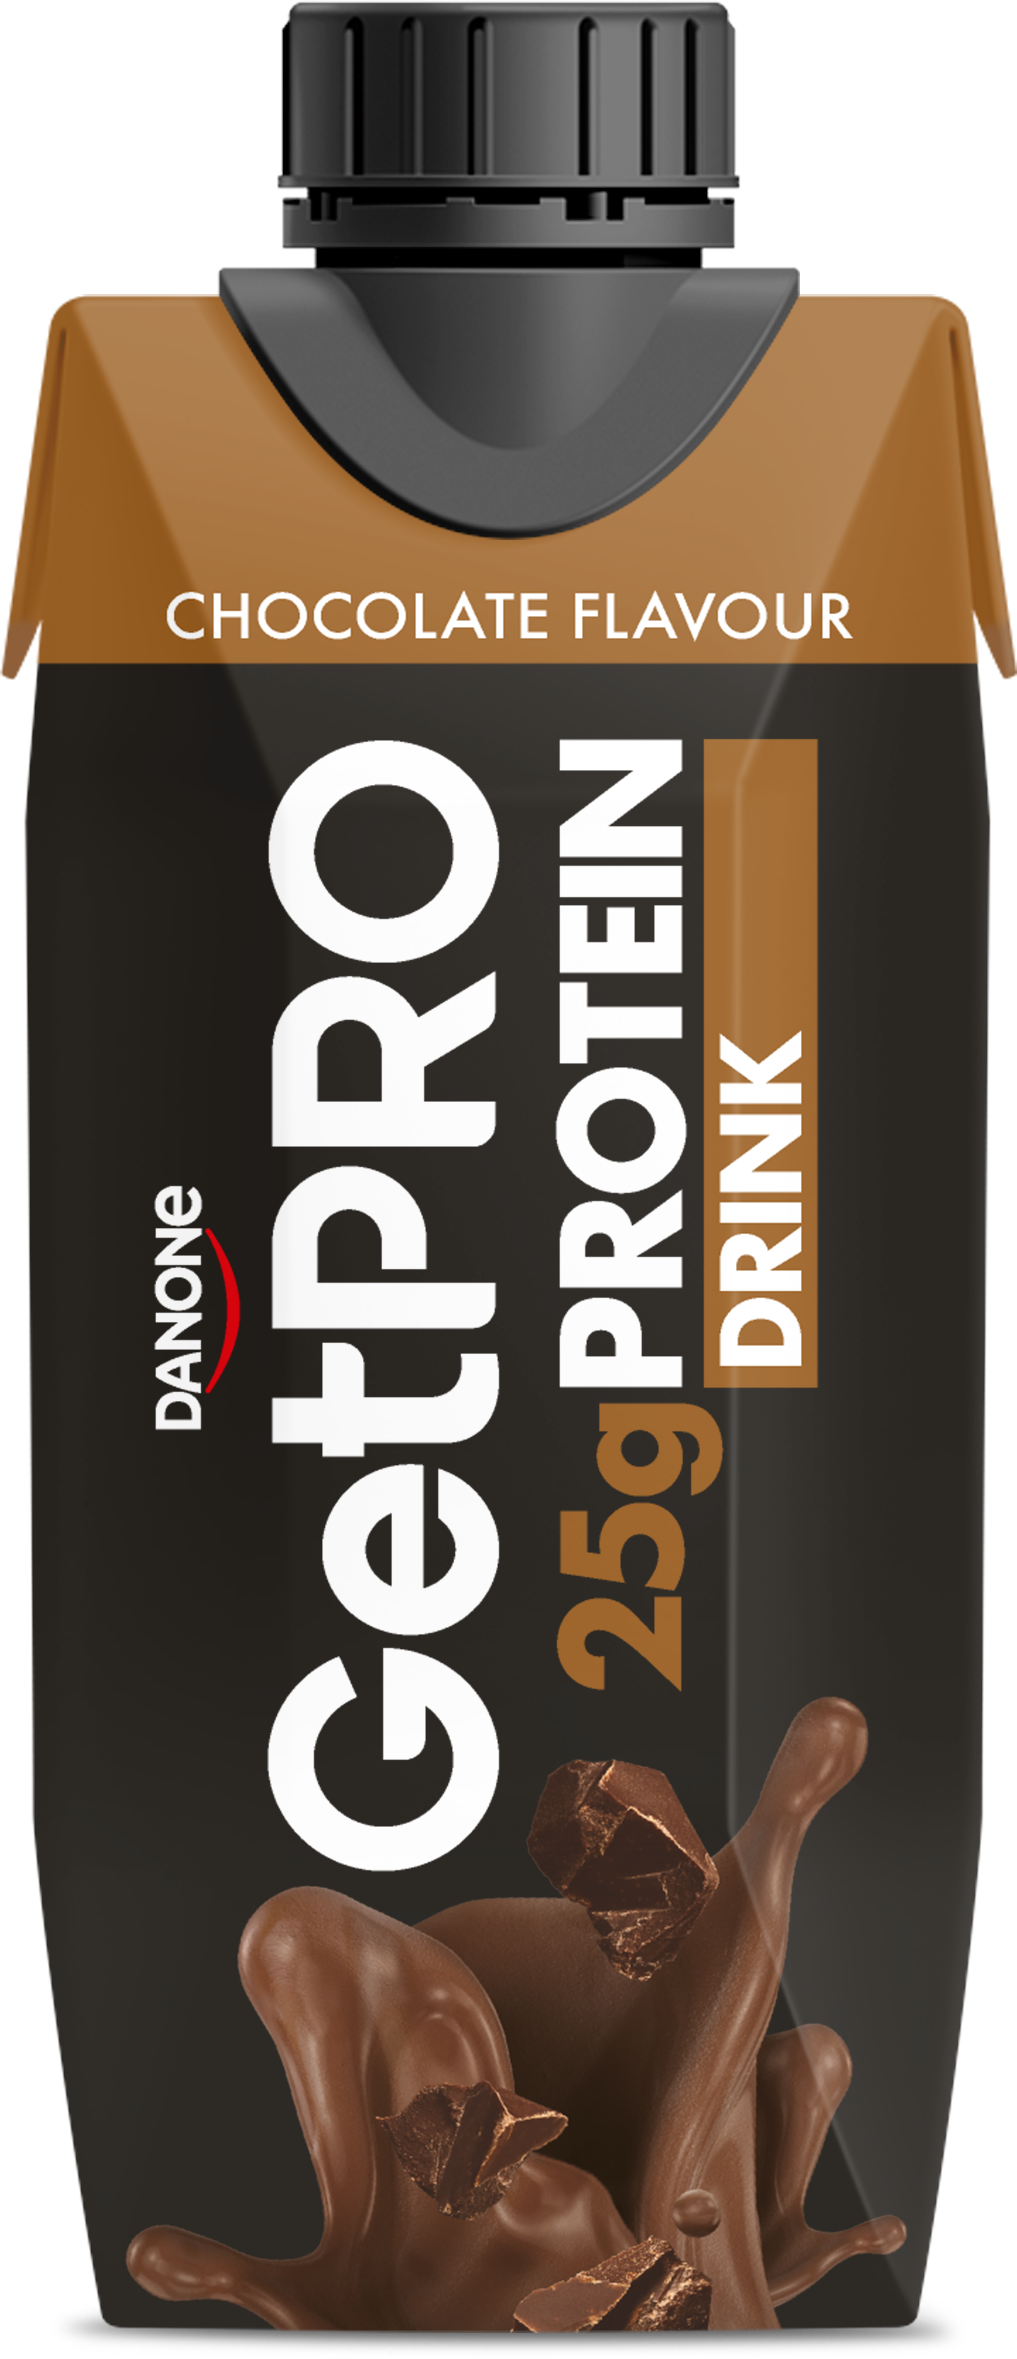 GetPRO Chocolate flavour drink